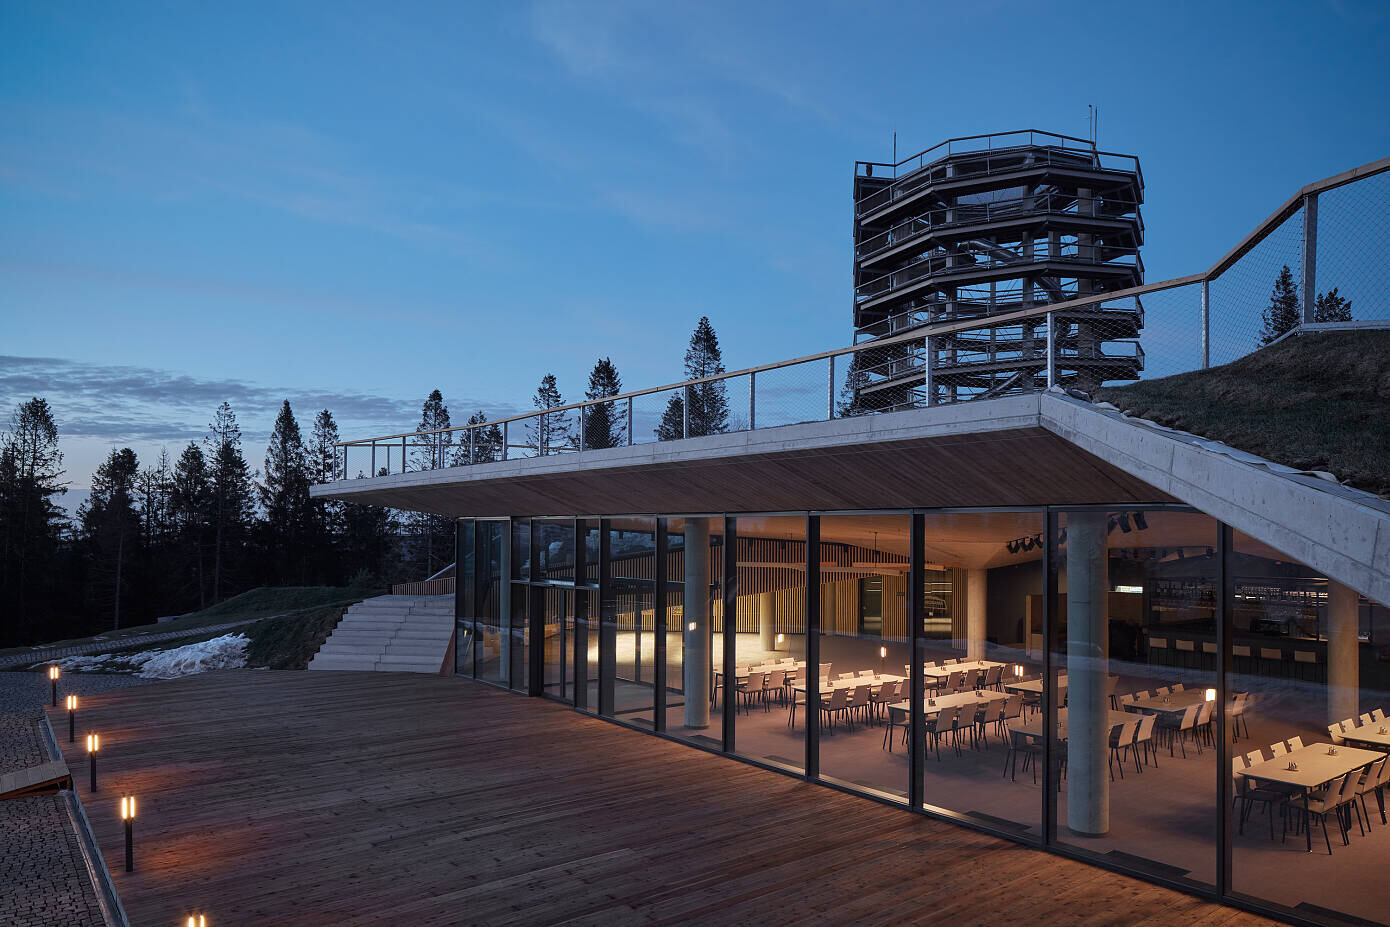 Bachledka – Summit Facilities by Compass Architekti